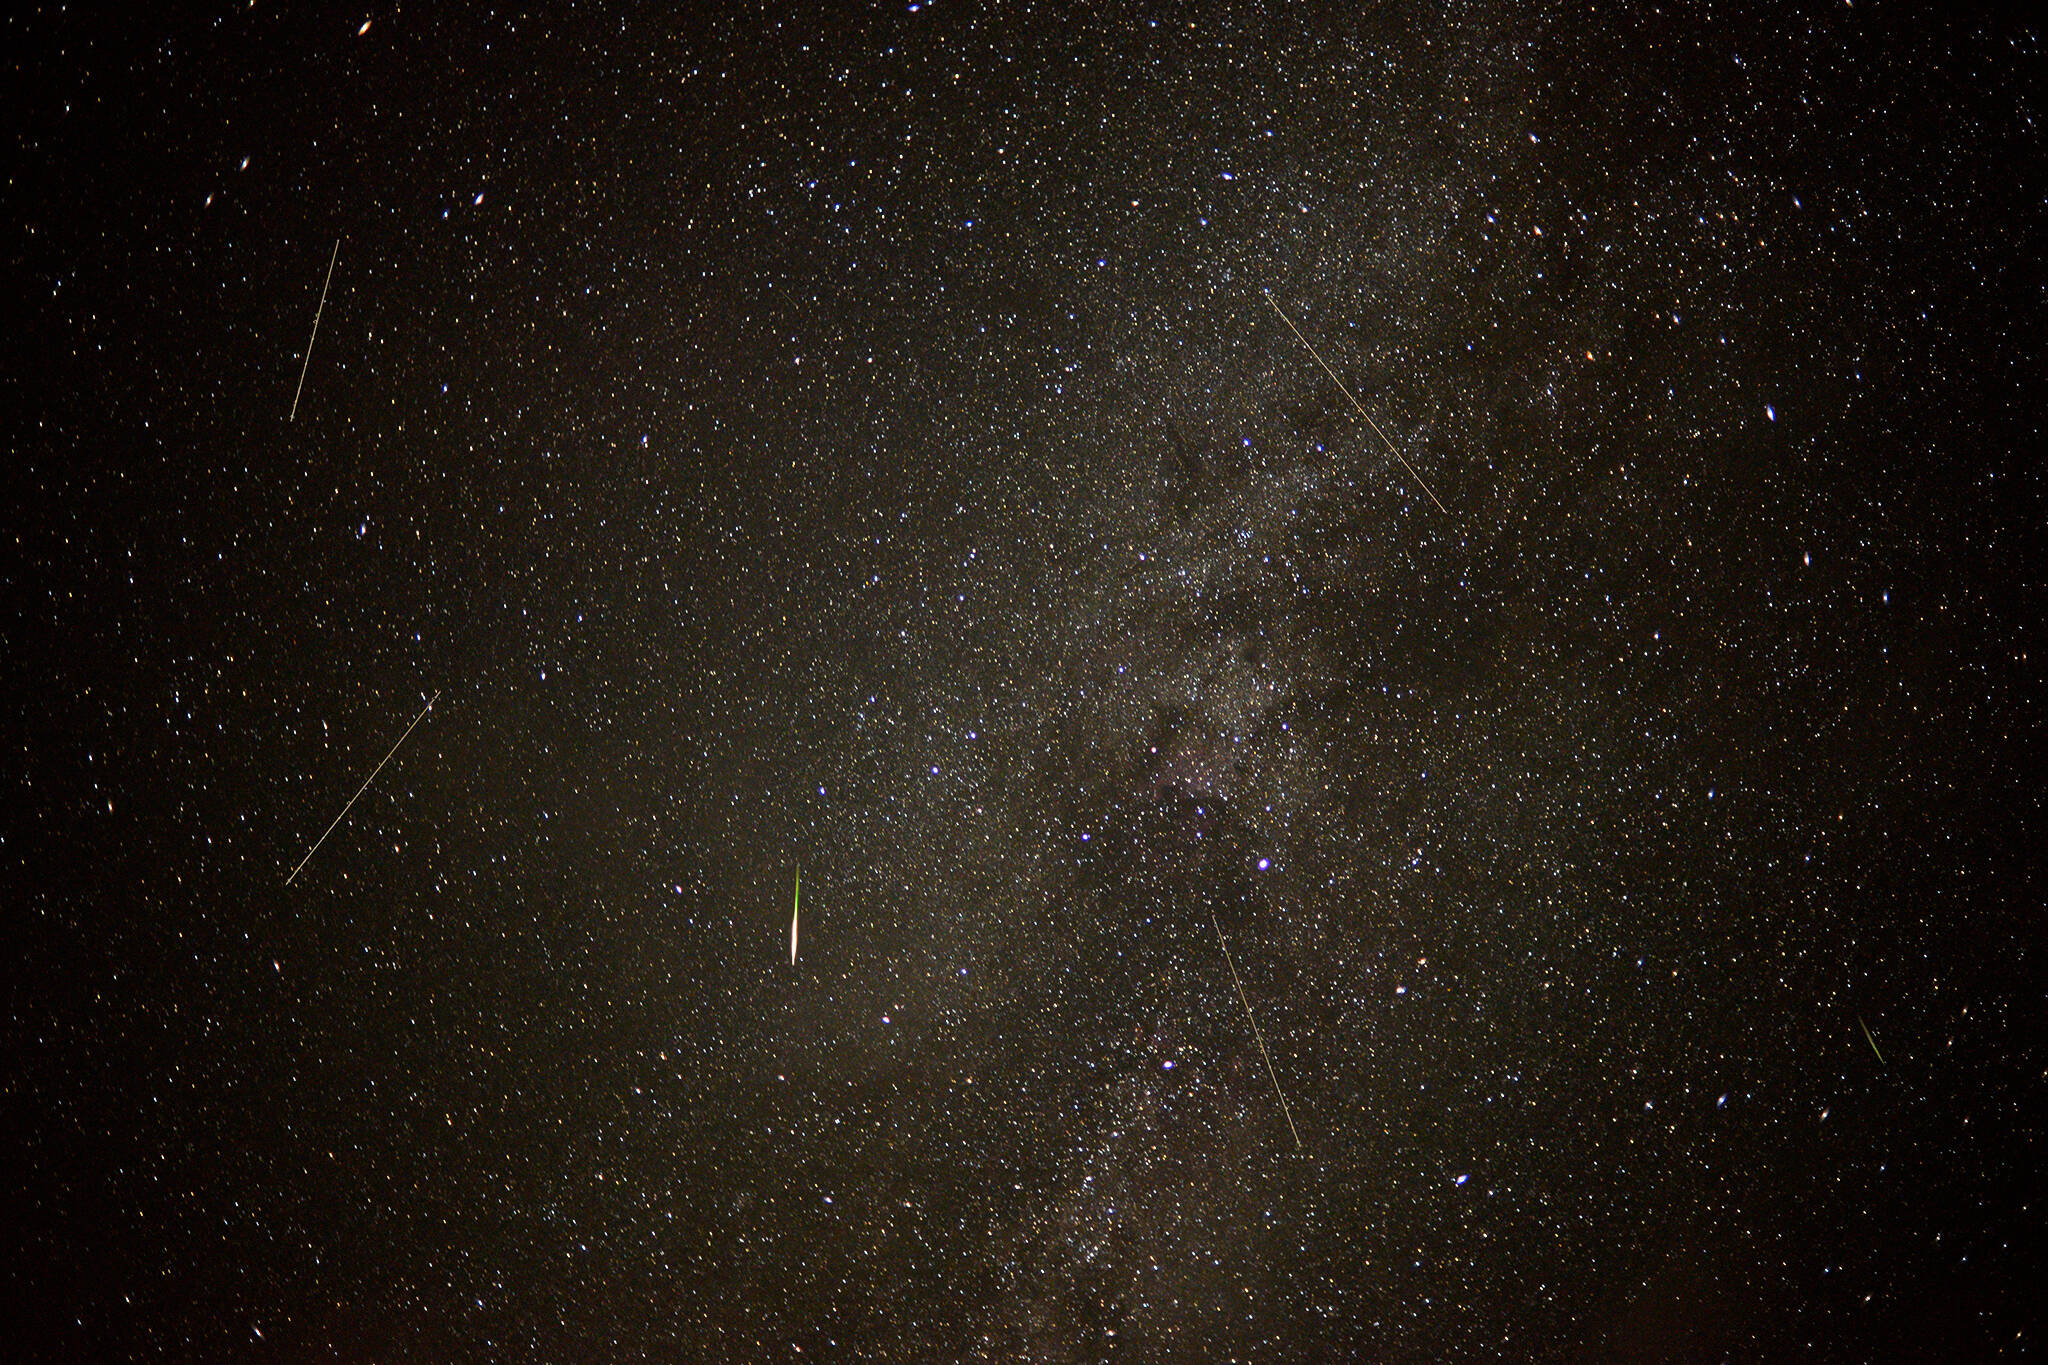 quadrantid meteor shower